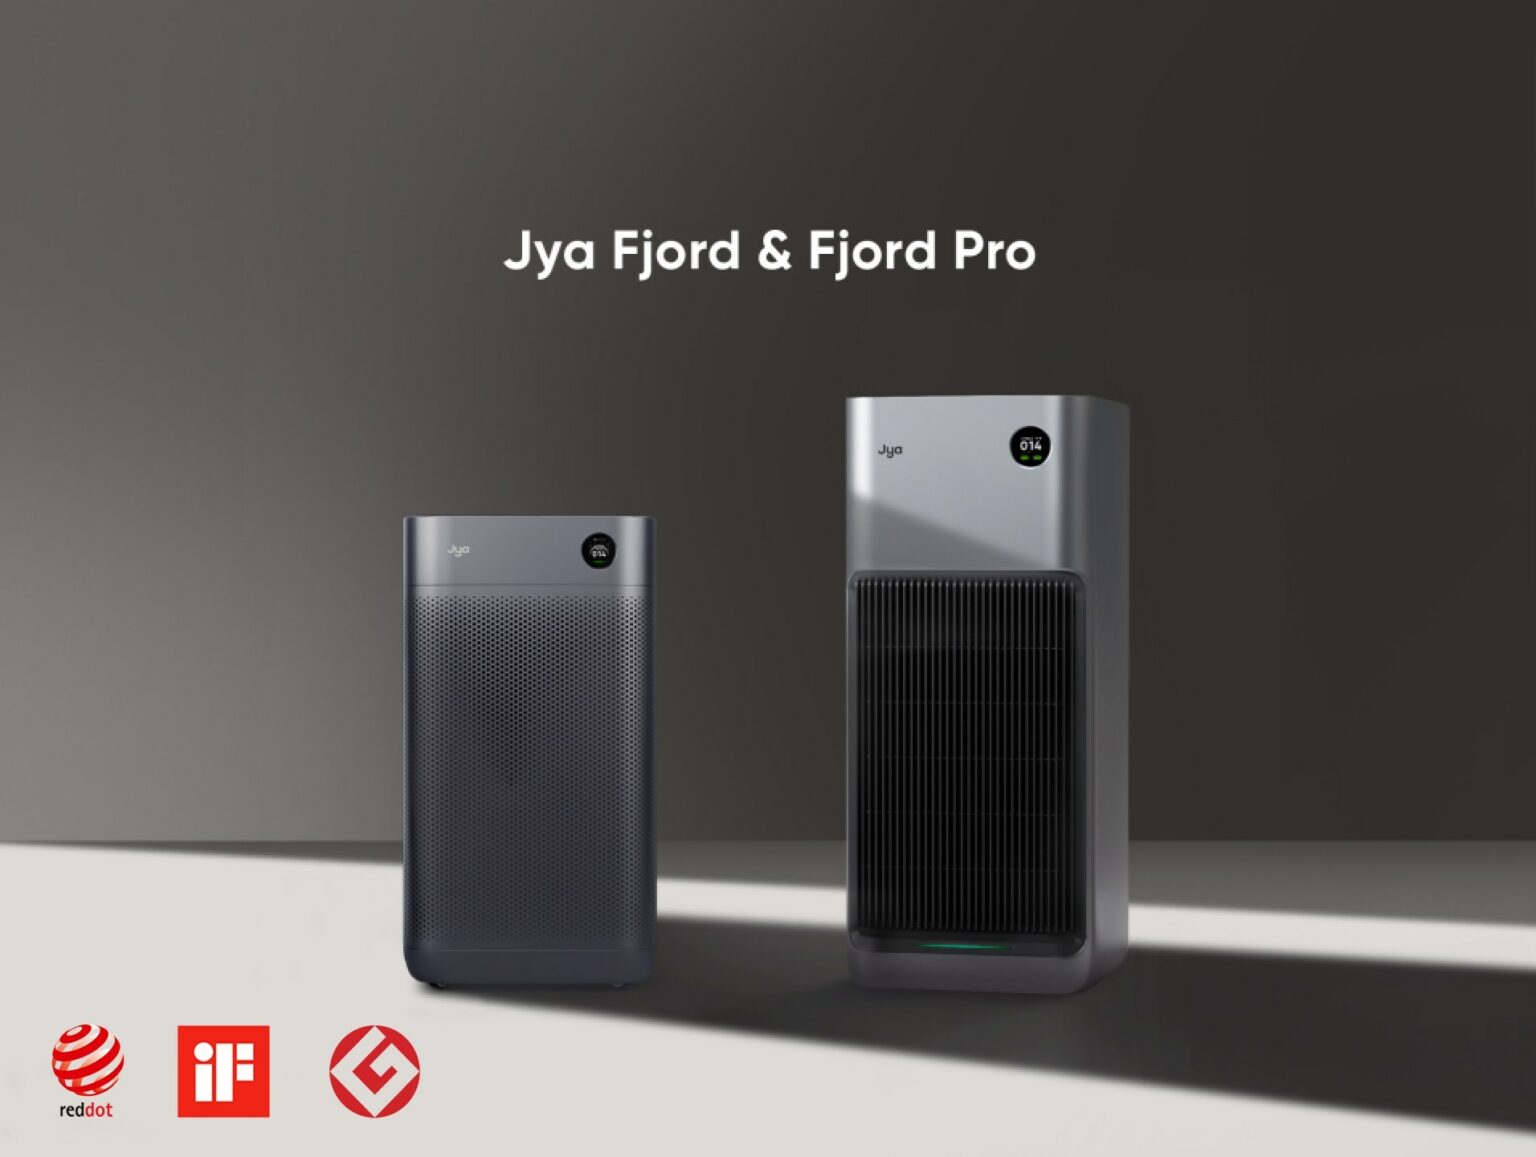 Los nuevos purificadores de aire Jya Fjord y Fjord Pro son compatibles con HomeKit.